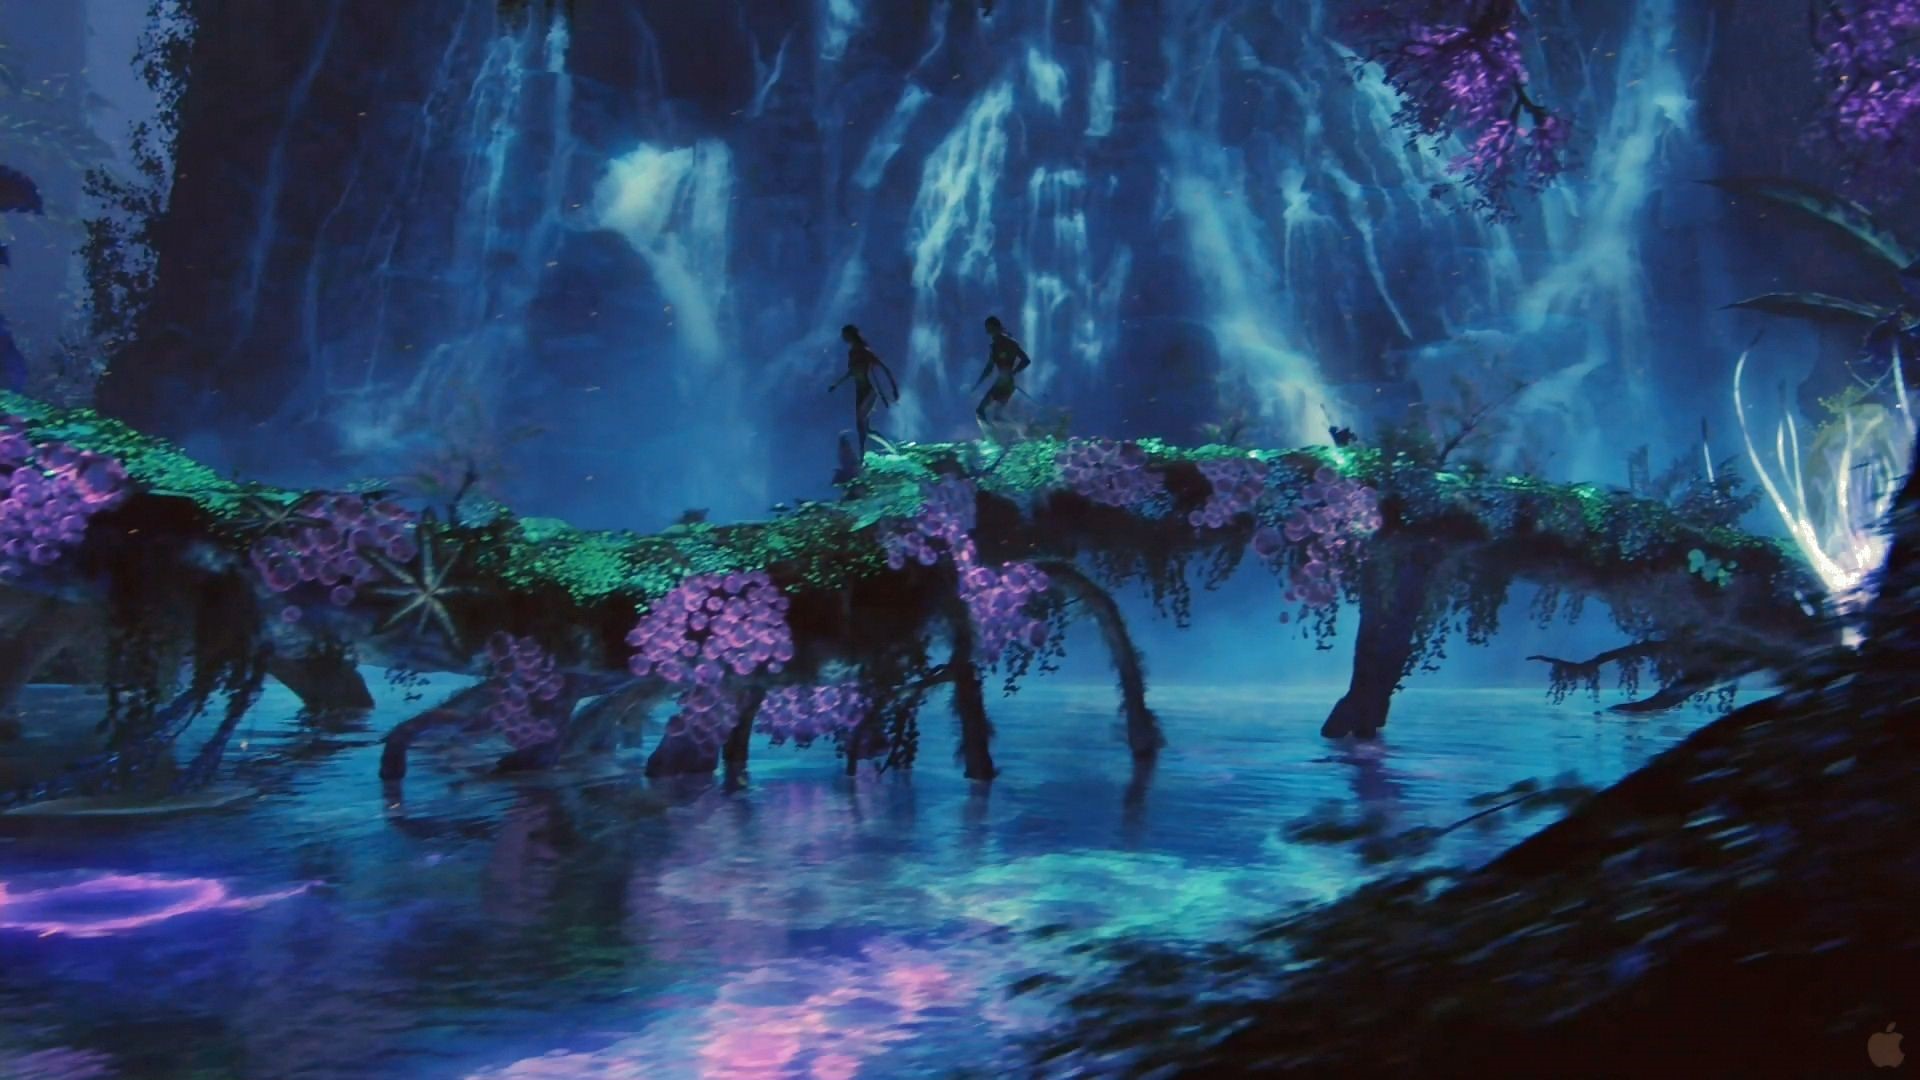 Xem Avatar công nghệ IMAX 3D 4DX và Starium Trải nghiệm khác gì nhau